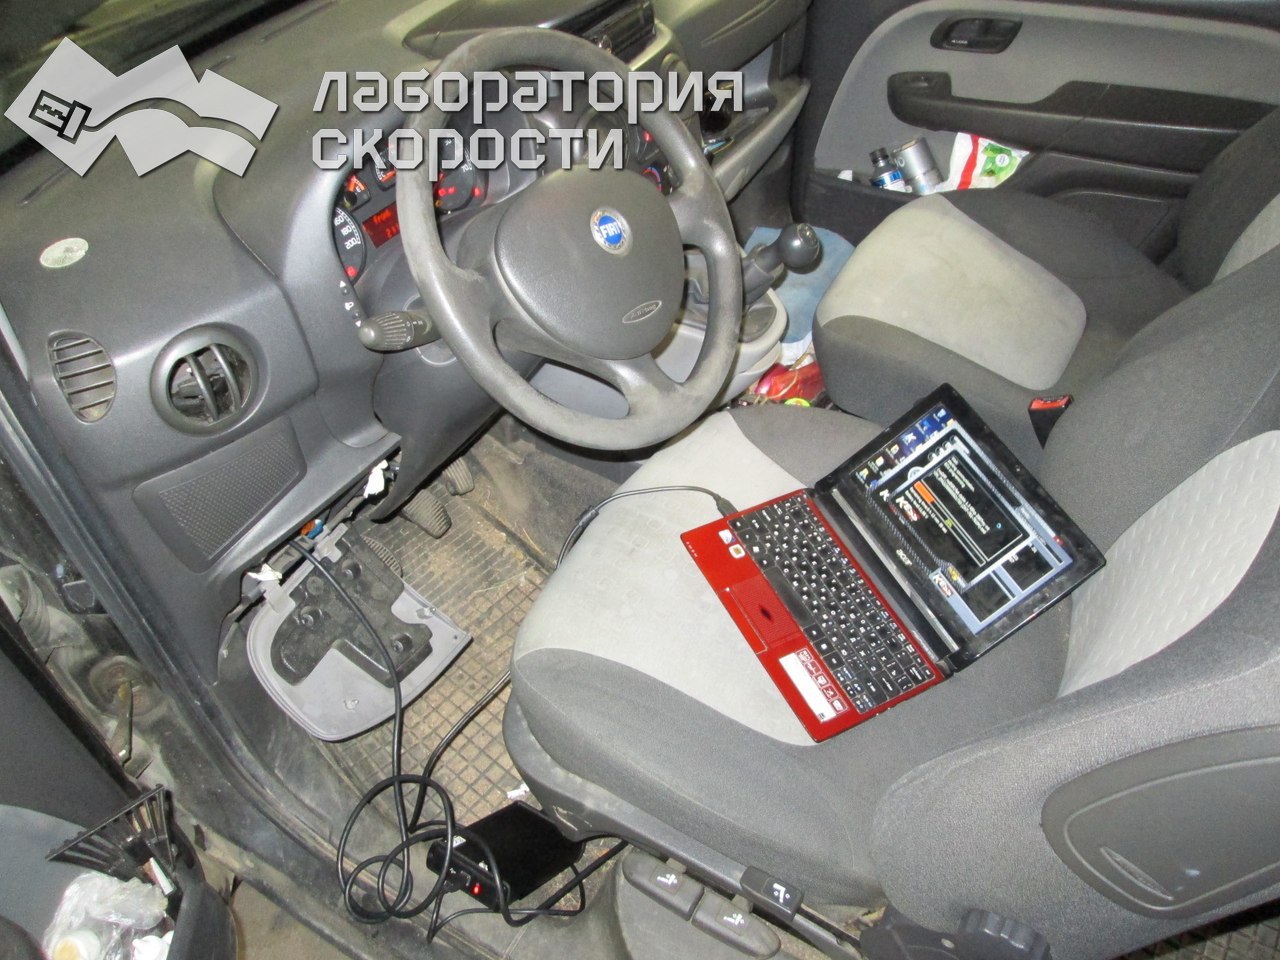 Чип-тюнинг Fiat Doblo 1.3d. Удаление сажевого филтра и ЕГР. Отчет